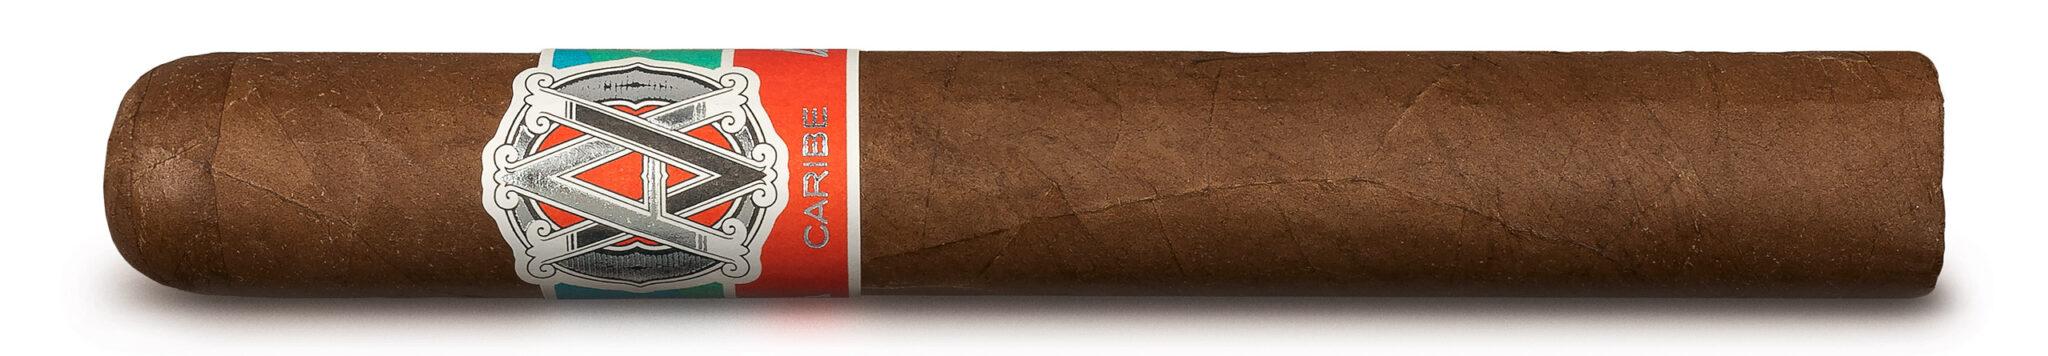 Сигара №11 2022 года по версии Cigarjournal — AVO SYNCRO CARIBE TORO